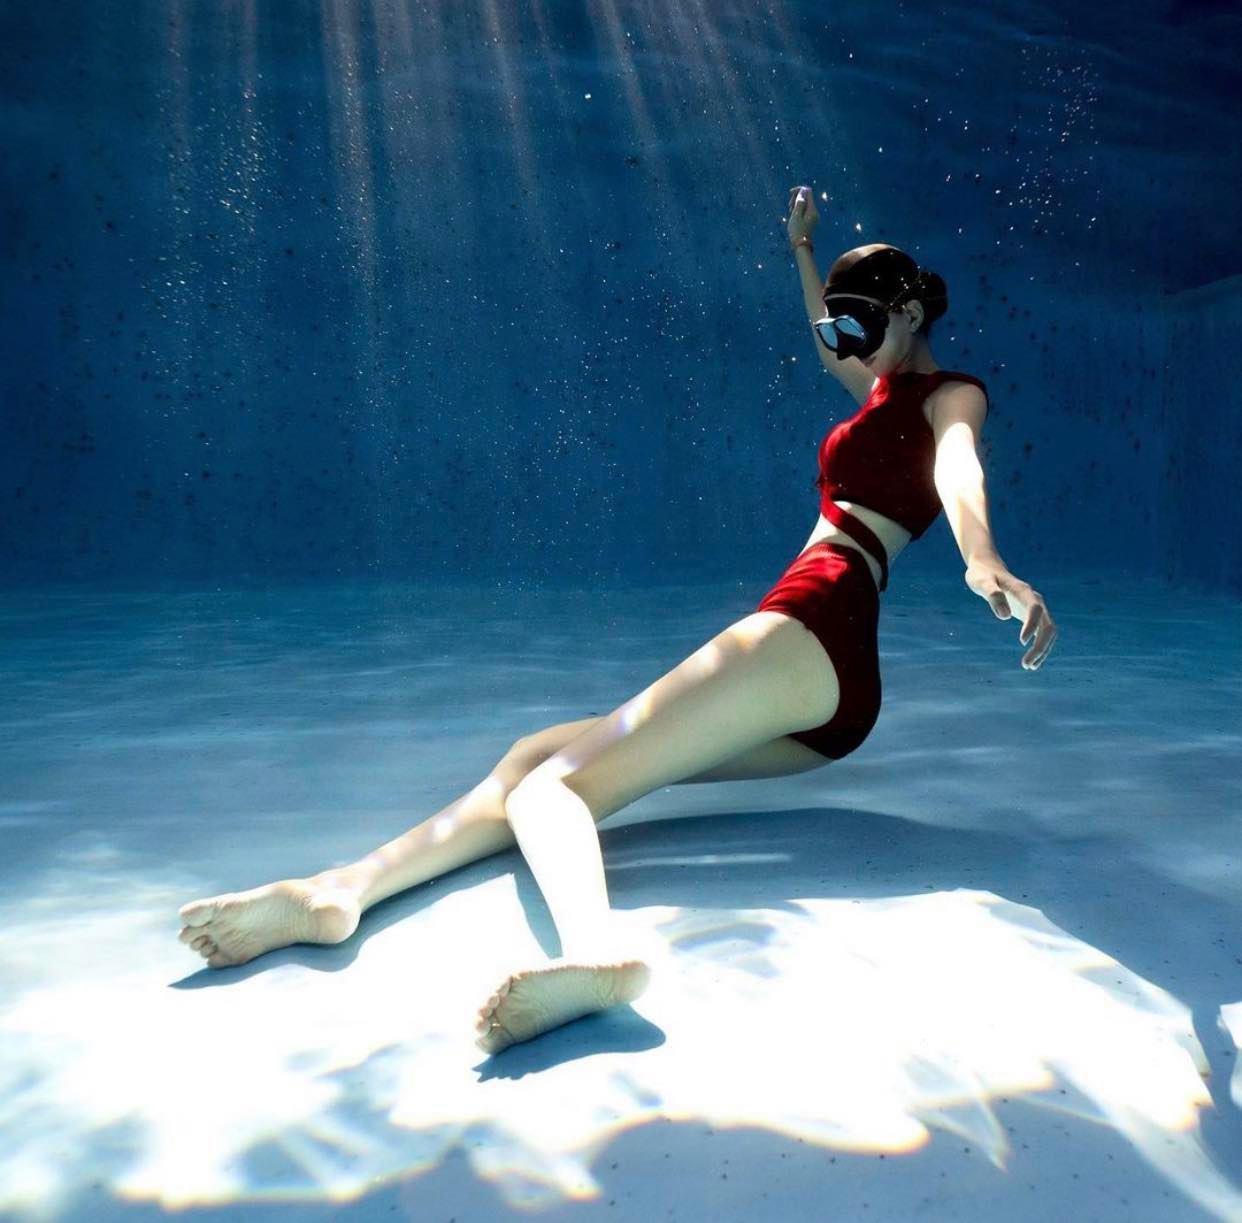 Kim Da Bin đang là cô nữ sinh gây sốt trên mạng xã hội Hàn Quốc&nbsp;những ngày gần đây nhờ những bức ảnh tạo dáng dưới nước, phô diễn trọn vẻ đẹp hình thể, đặc biệt là đôi chân dài gấp rưỡi người thường, cặp giò thon thả và thẳng như kiếm.